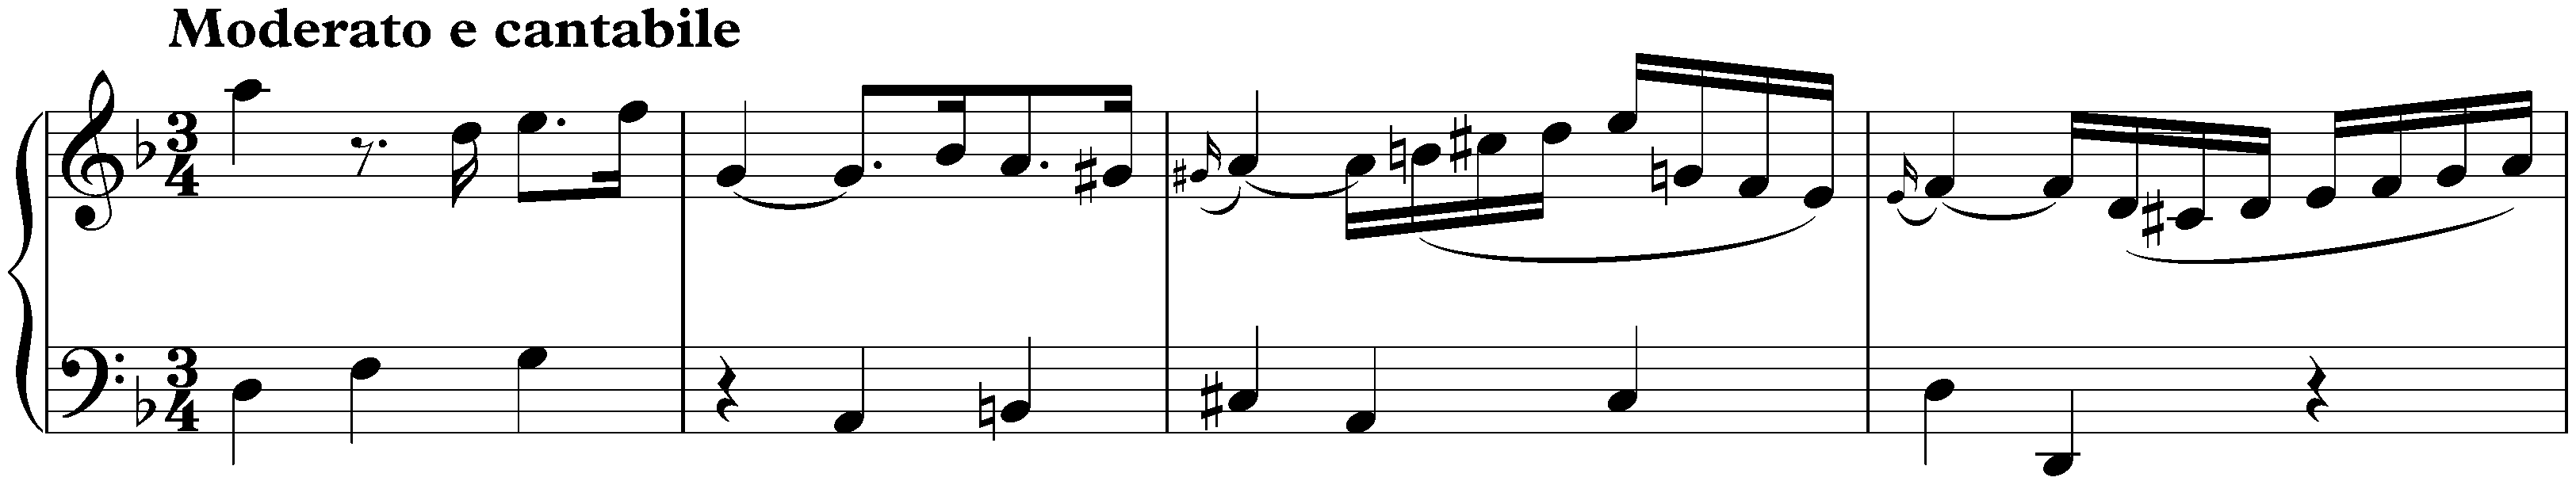 Sonata in D minor, K. 77; 1. Moderato e cantabile